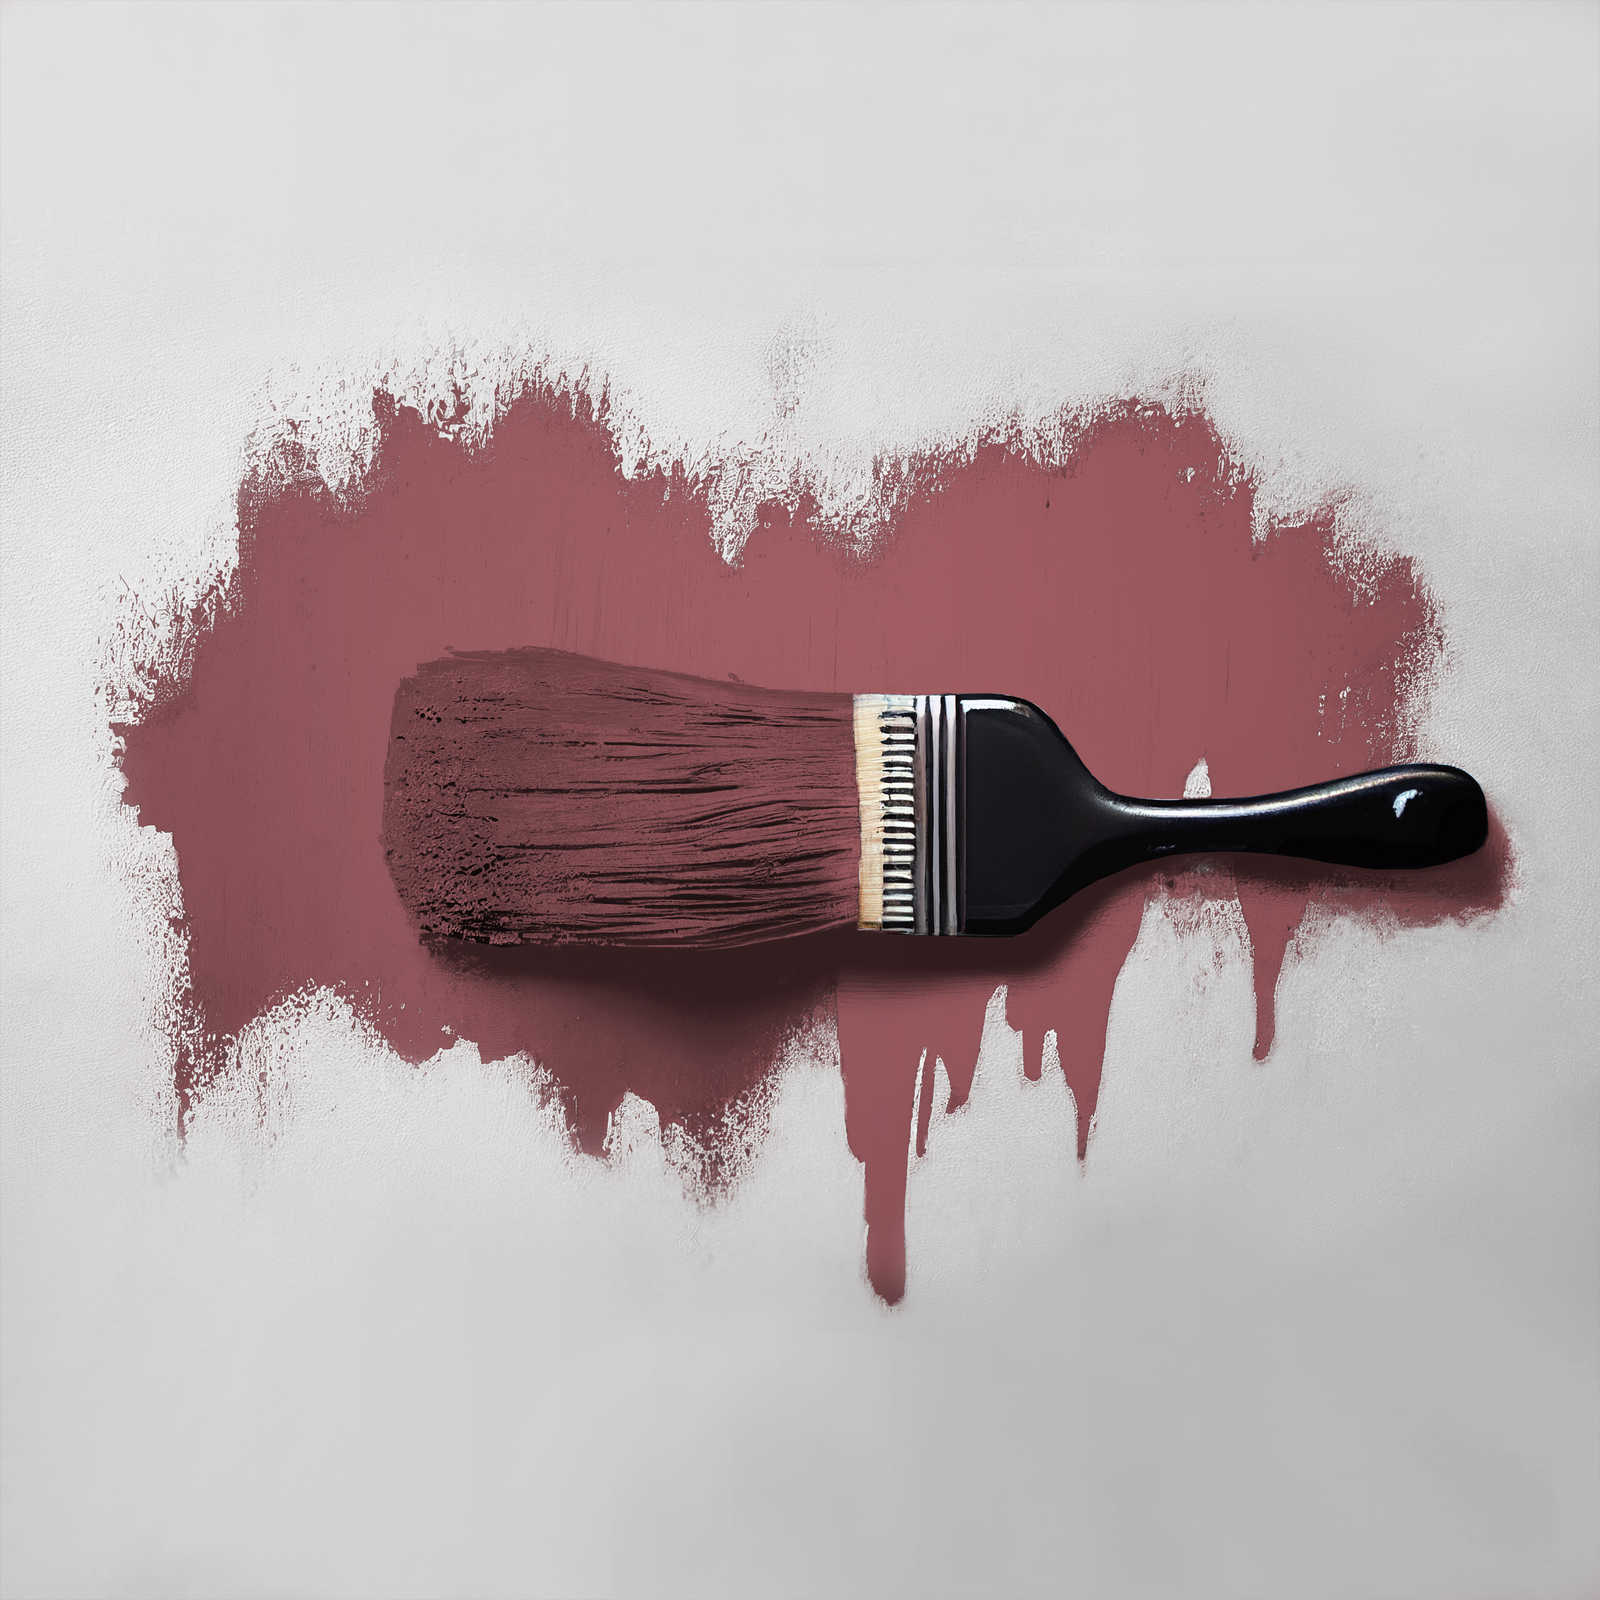             Pittura murale TCK7012 »Sweet Marmelade« in autentica tonalità berry – 2,5 litri
        